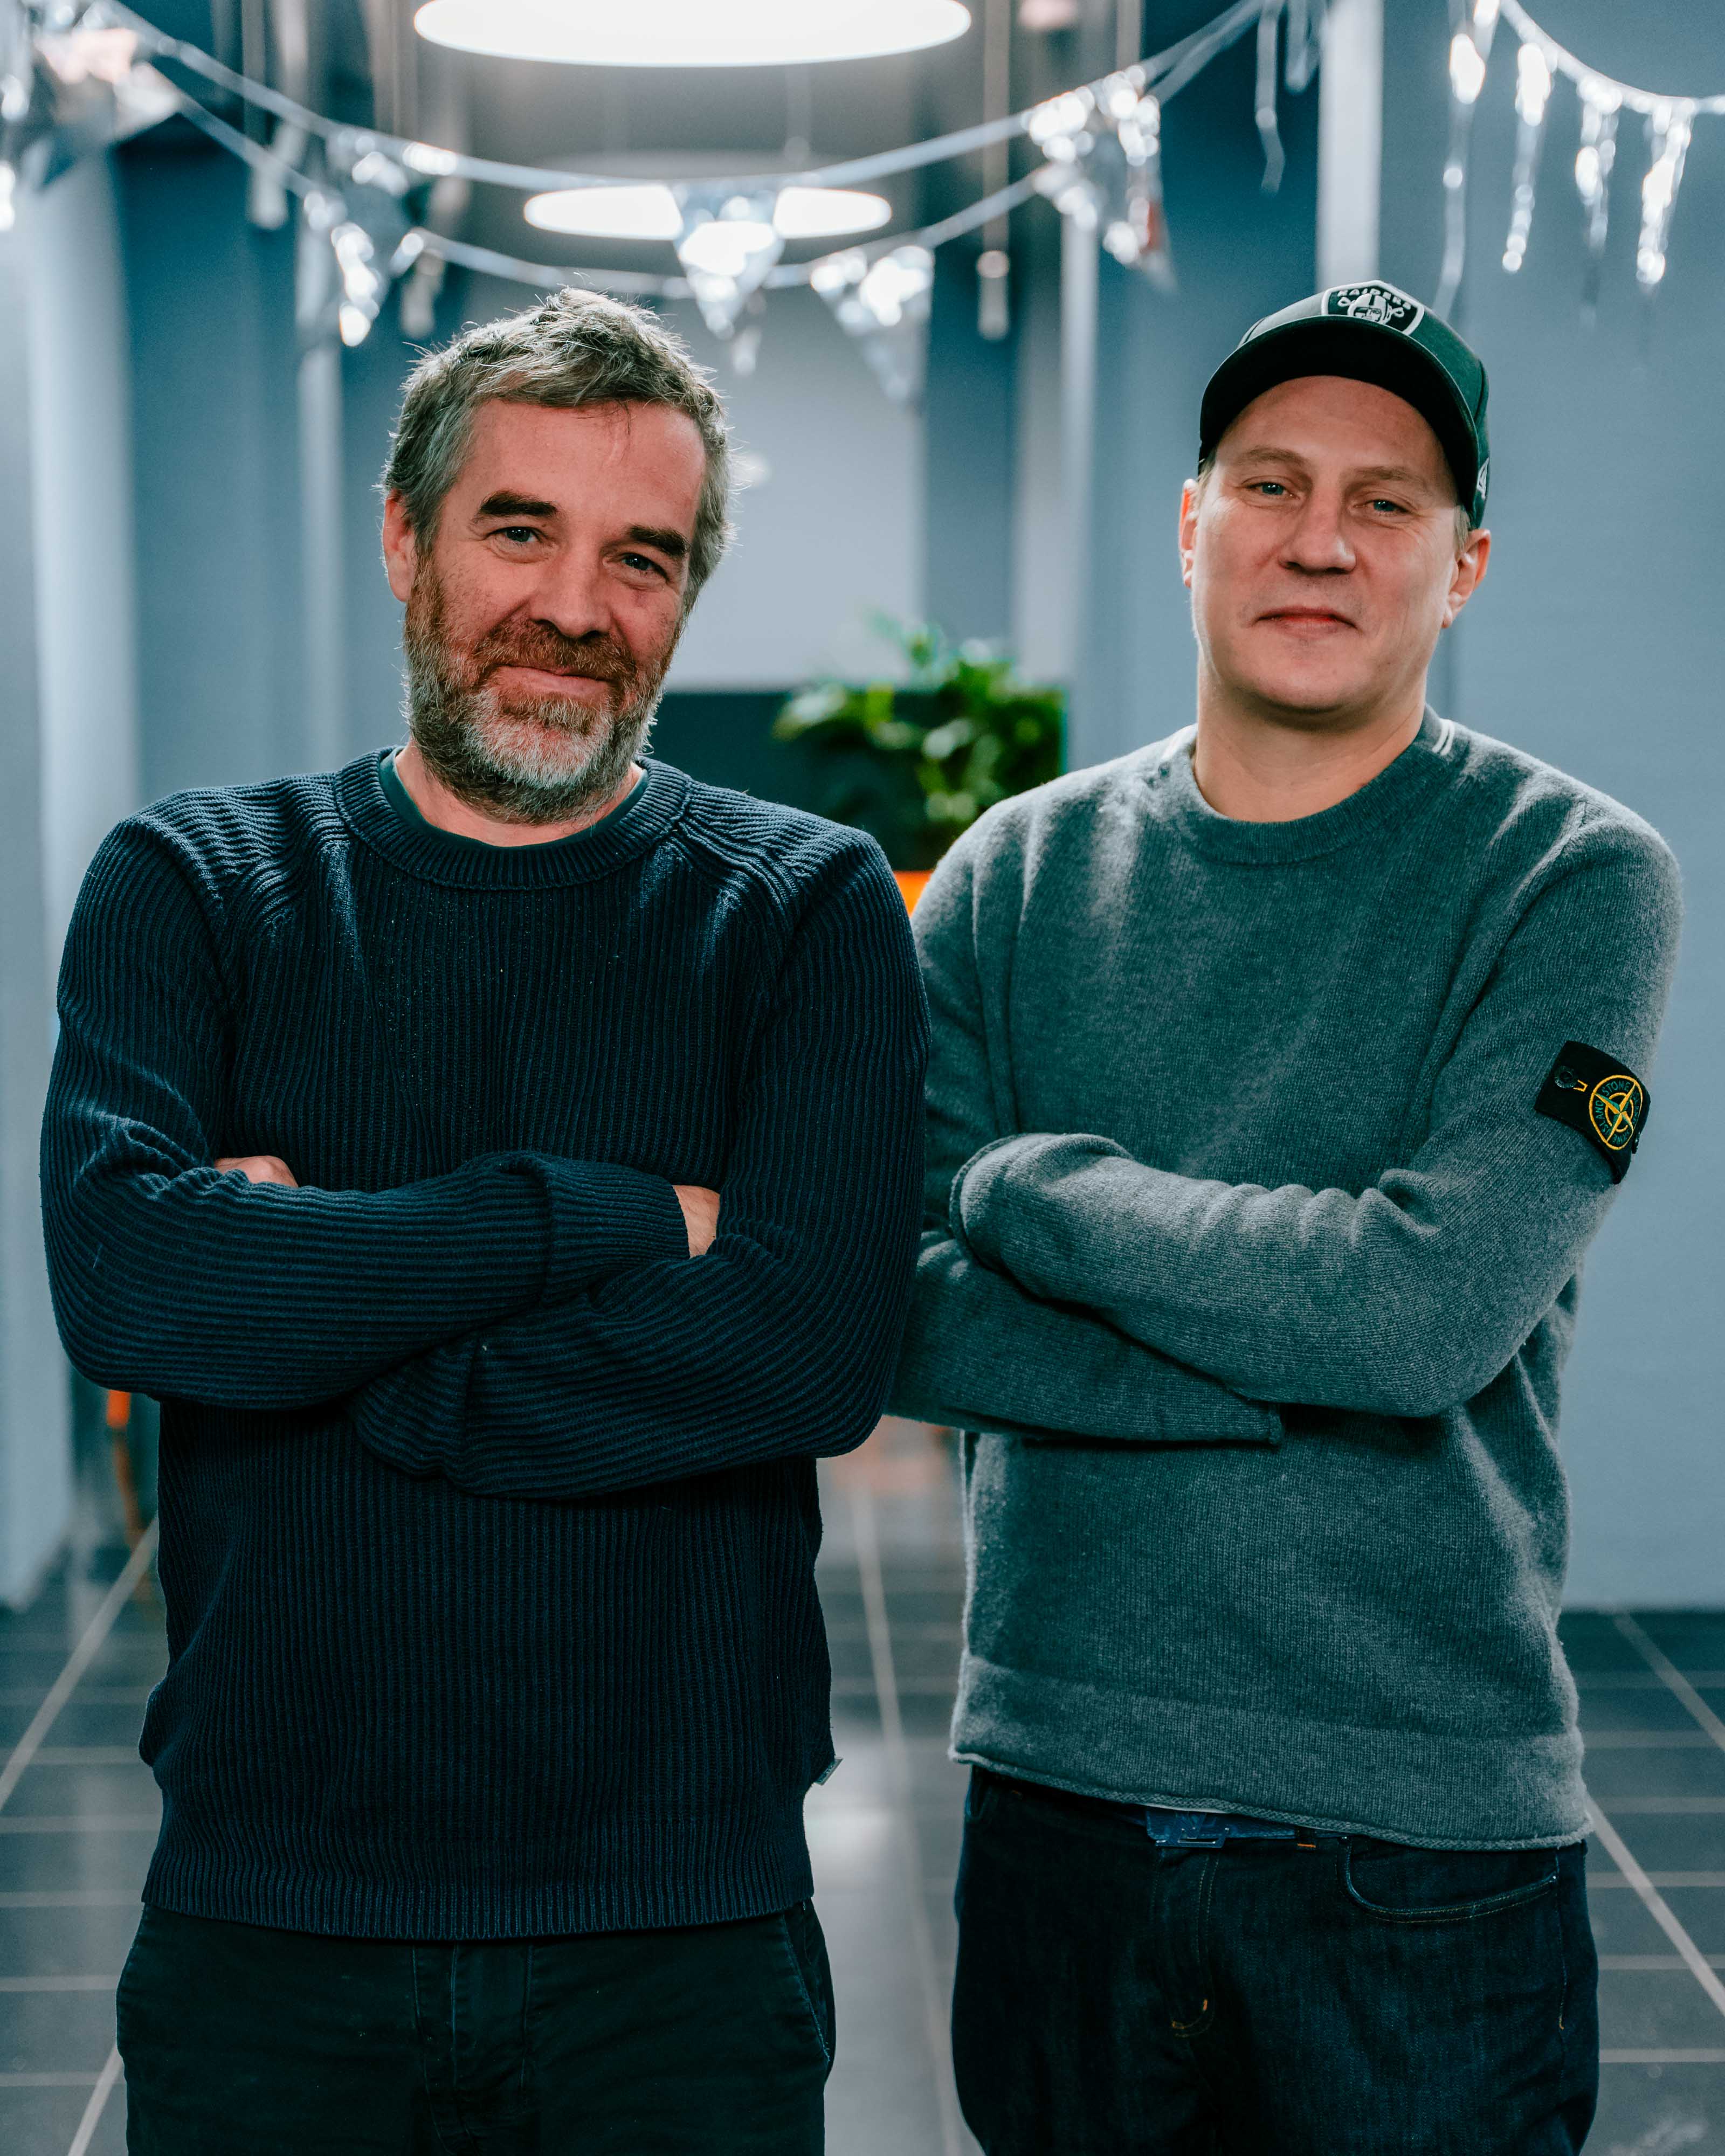 Mats Schjølberg Ulshagen og Pål Tøien (OnklP) smilende med armene i kryss